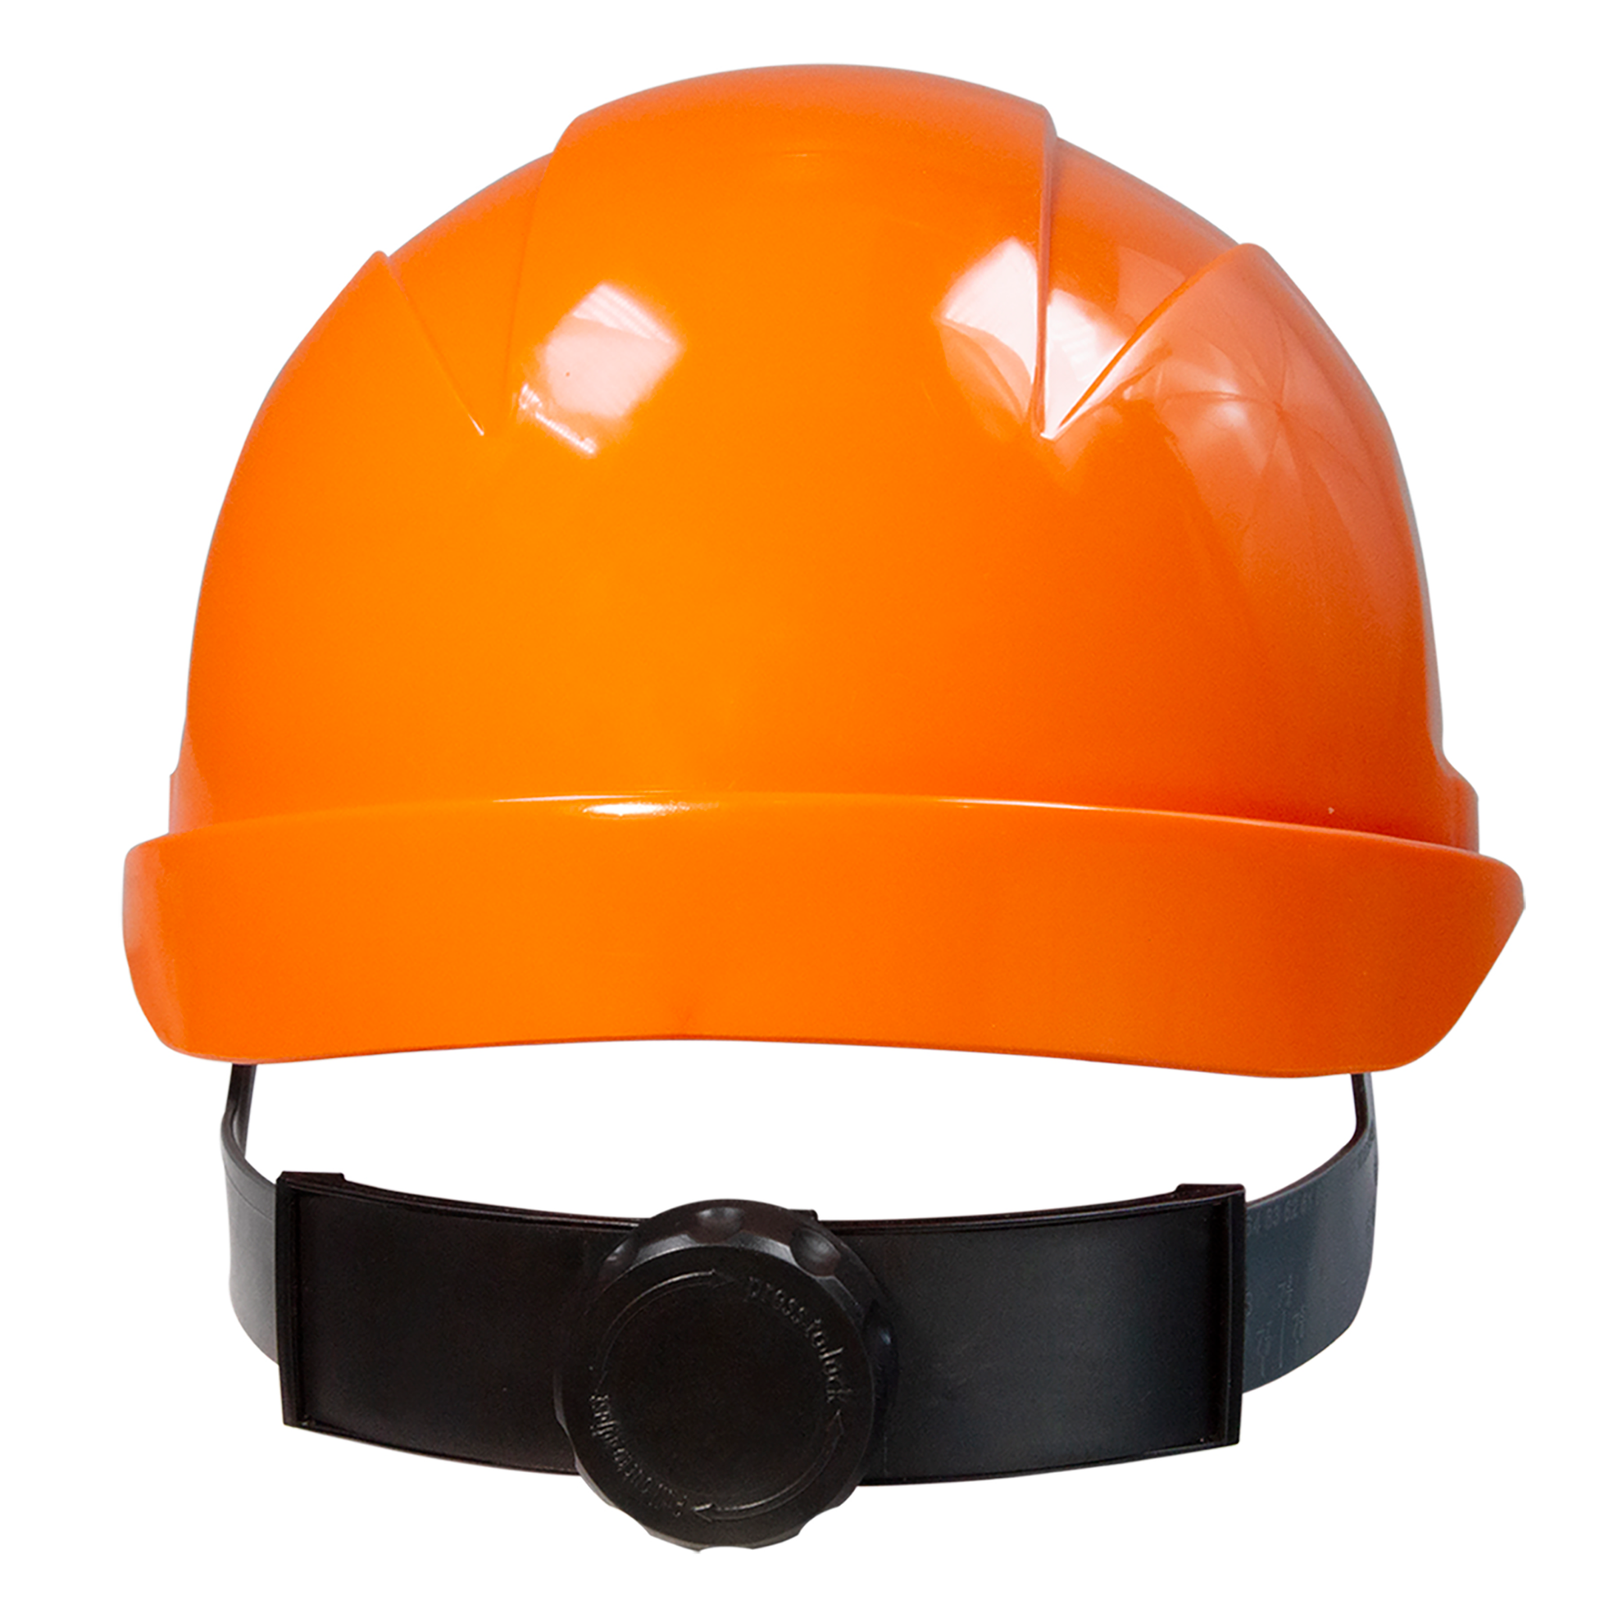 Orange hard hat with size adjustable ratchet system